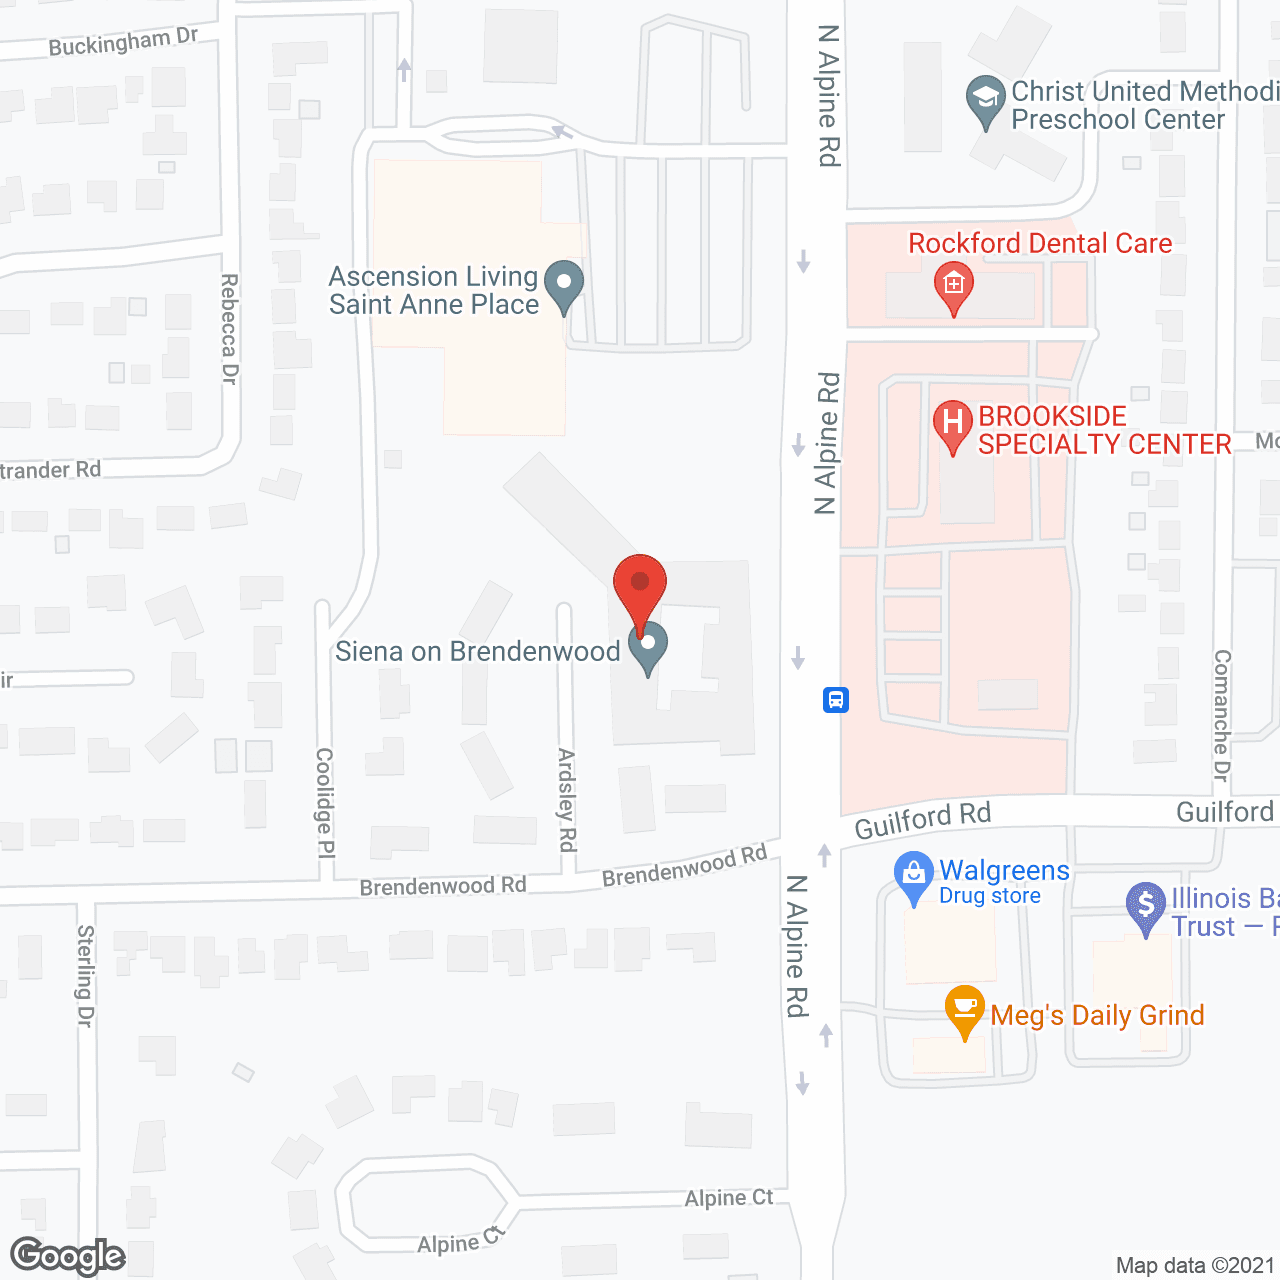 Siena on Brendenwood in google map